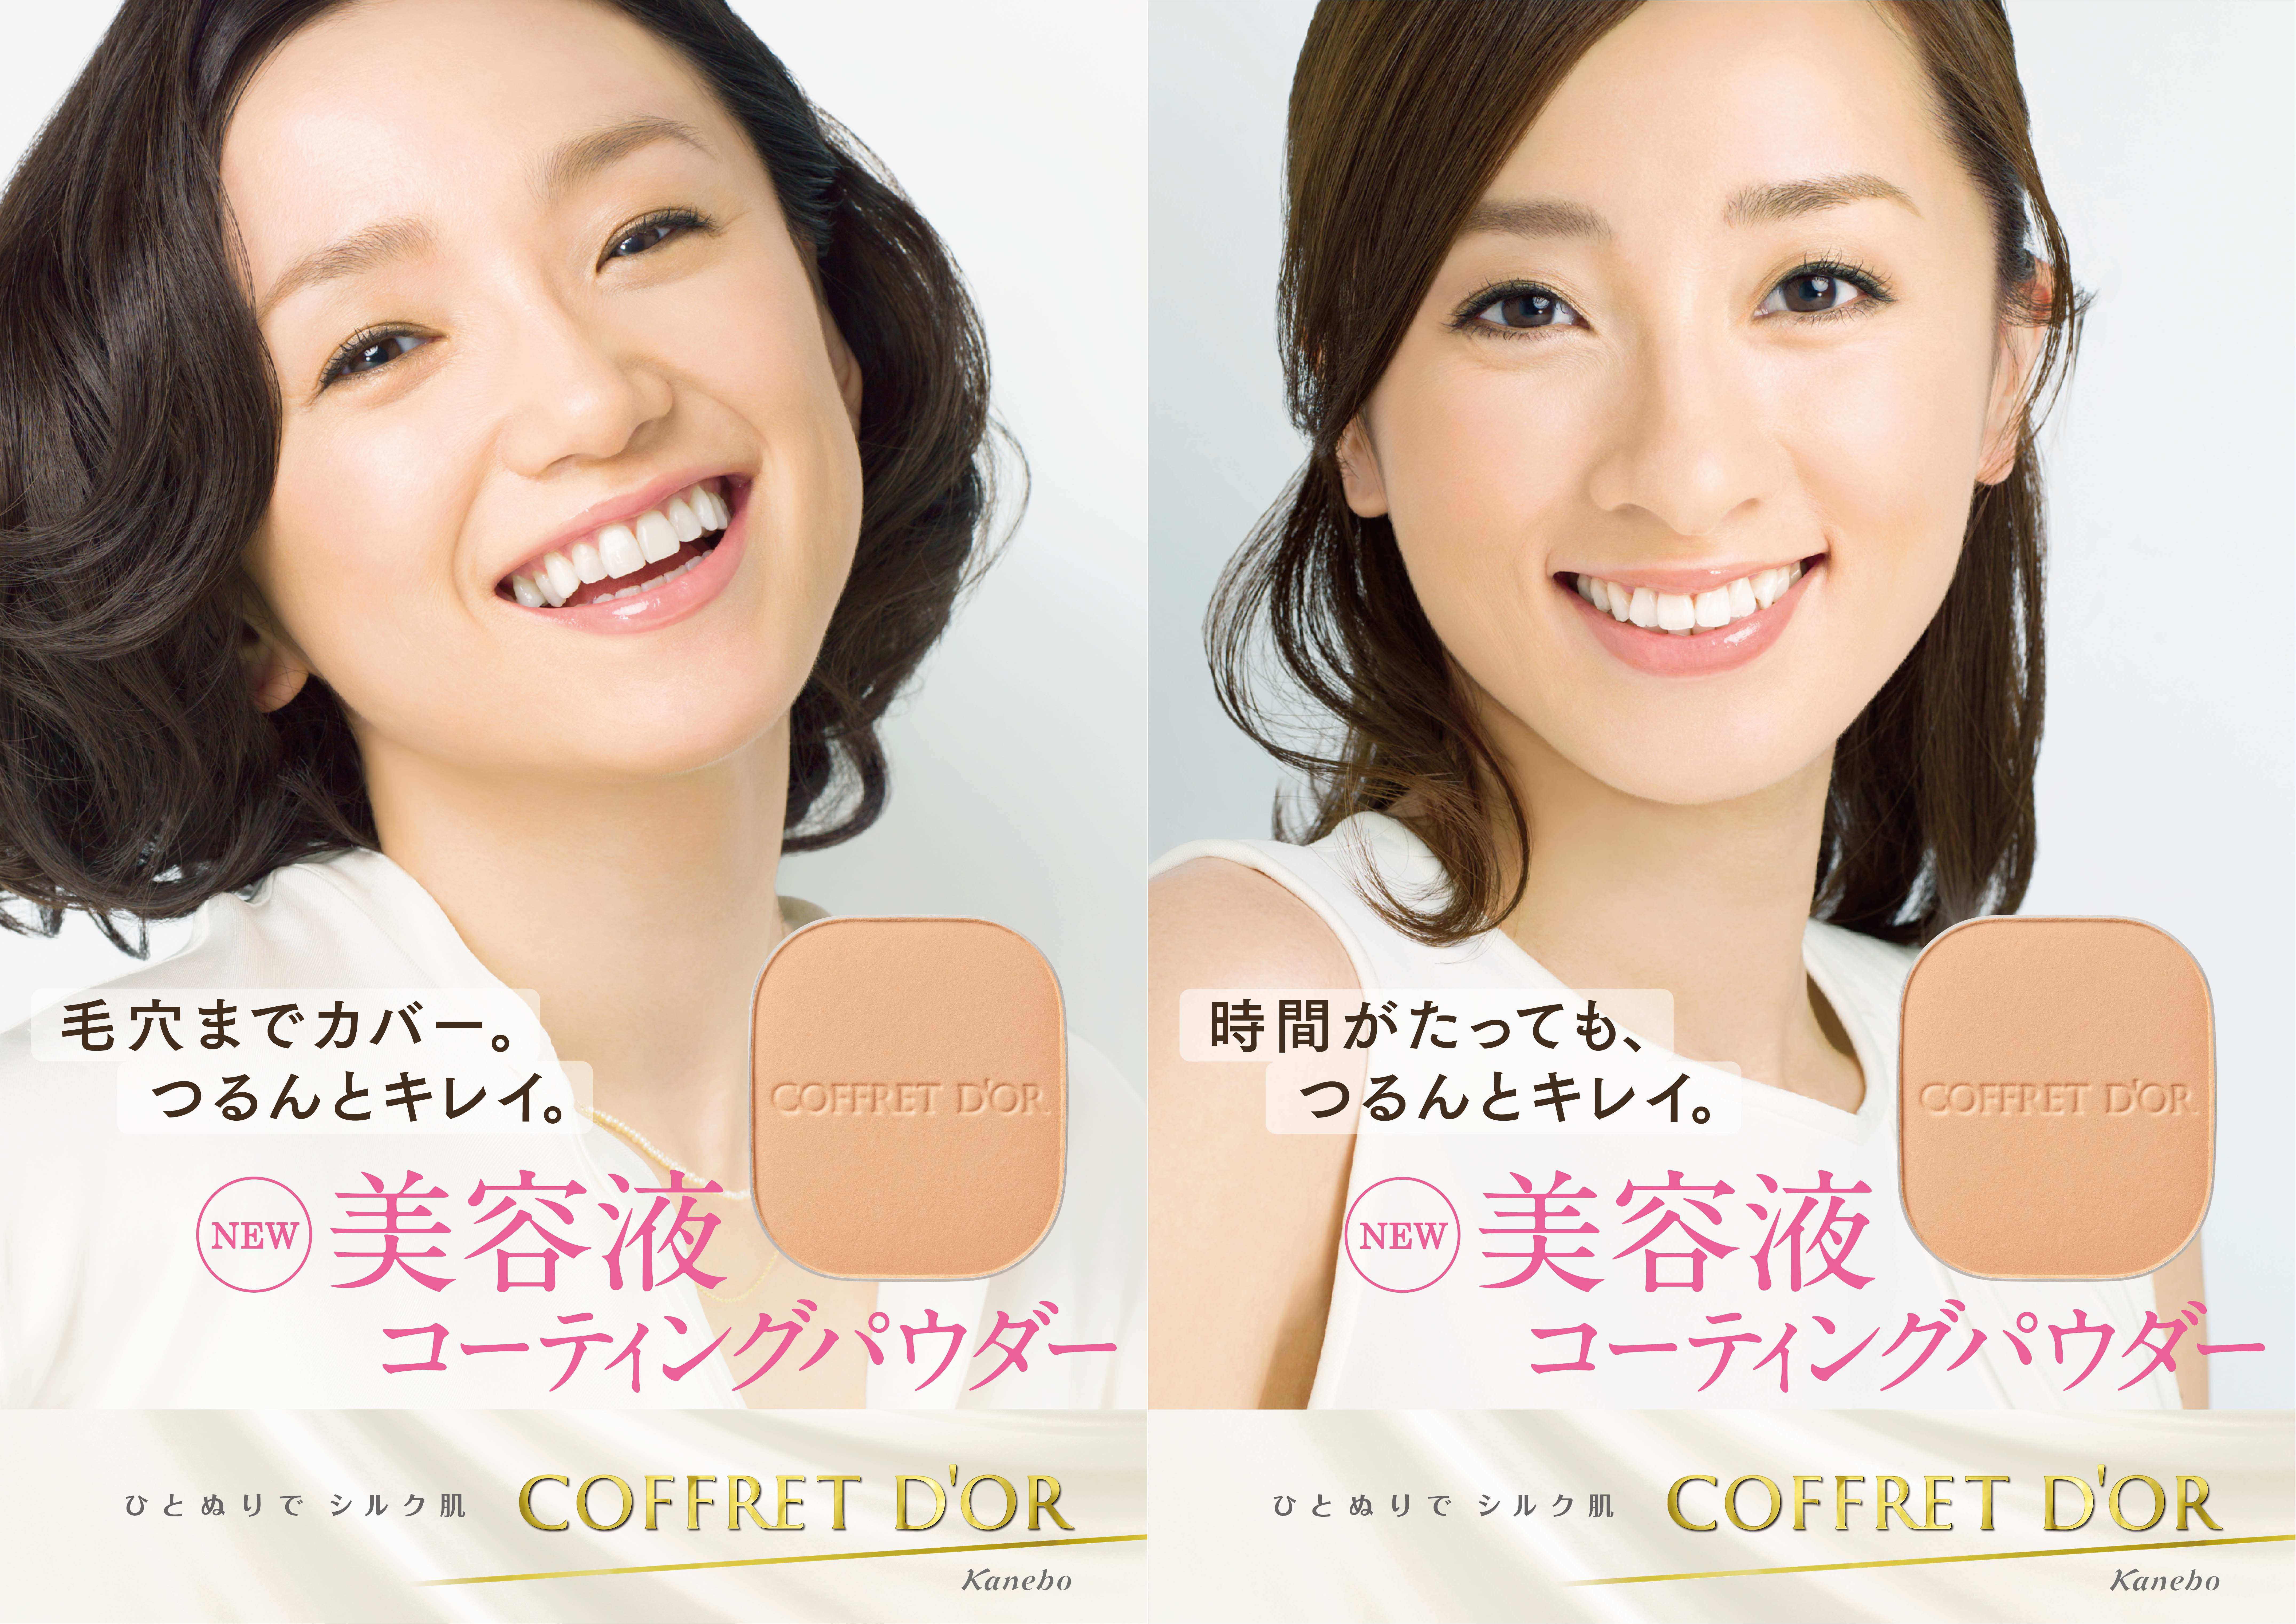 コフレドール ベースメイクの新イメージキャラクターに 永作博美さんと西尾由佳理さんを起用 株式会社カネボウ化粧品のプレスリリース